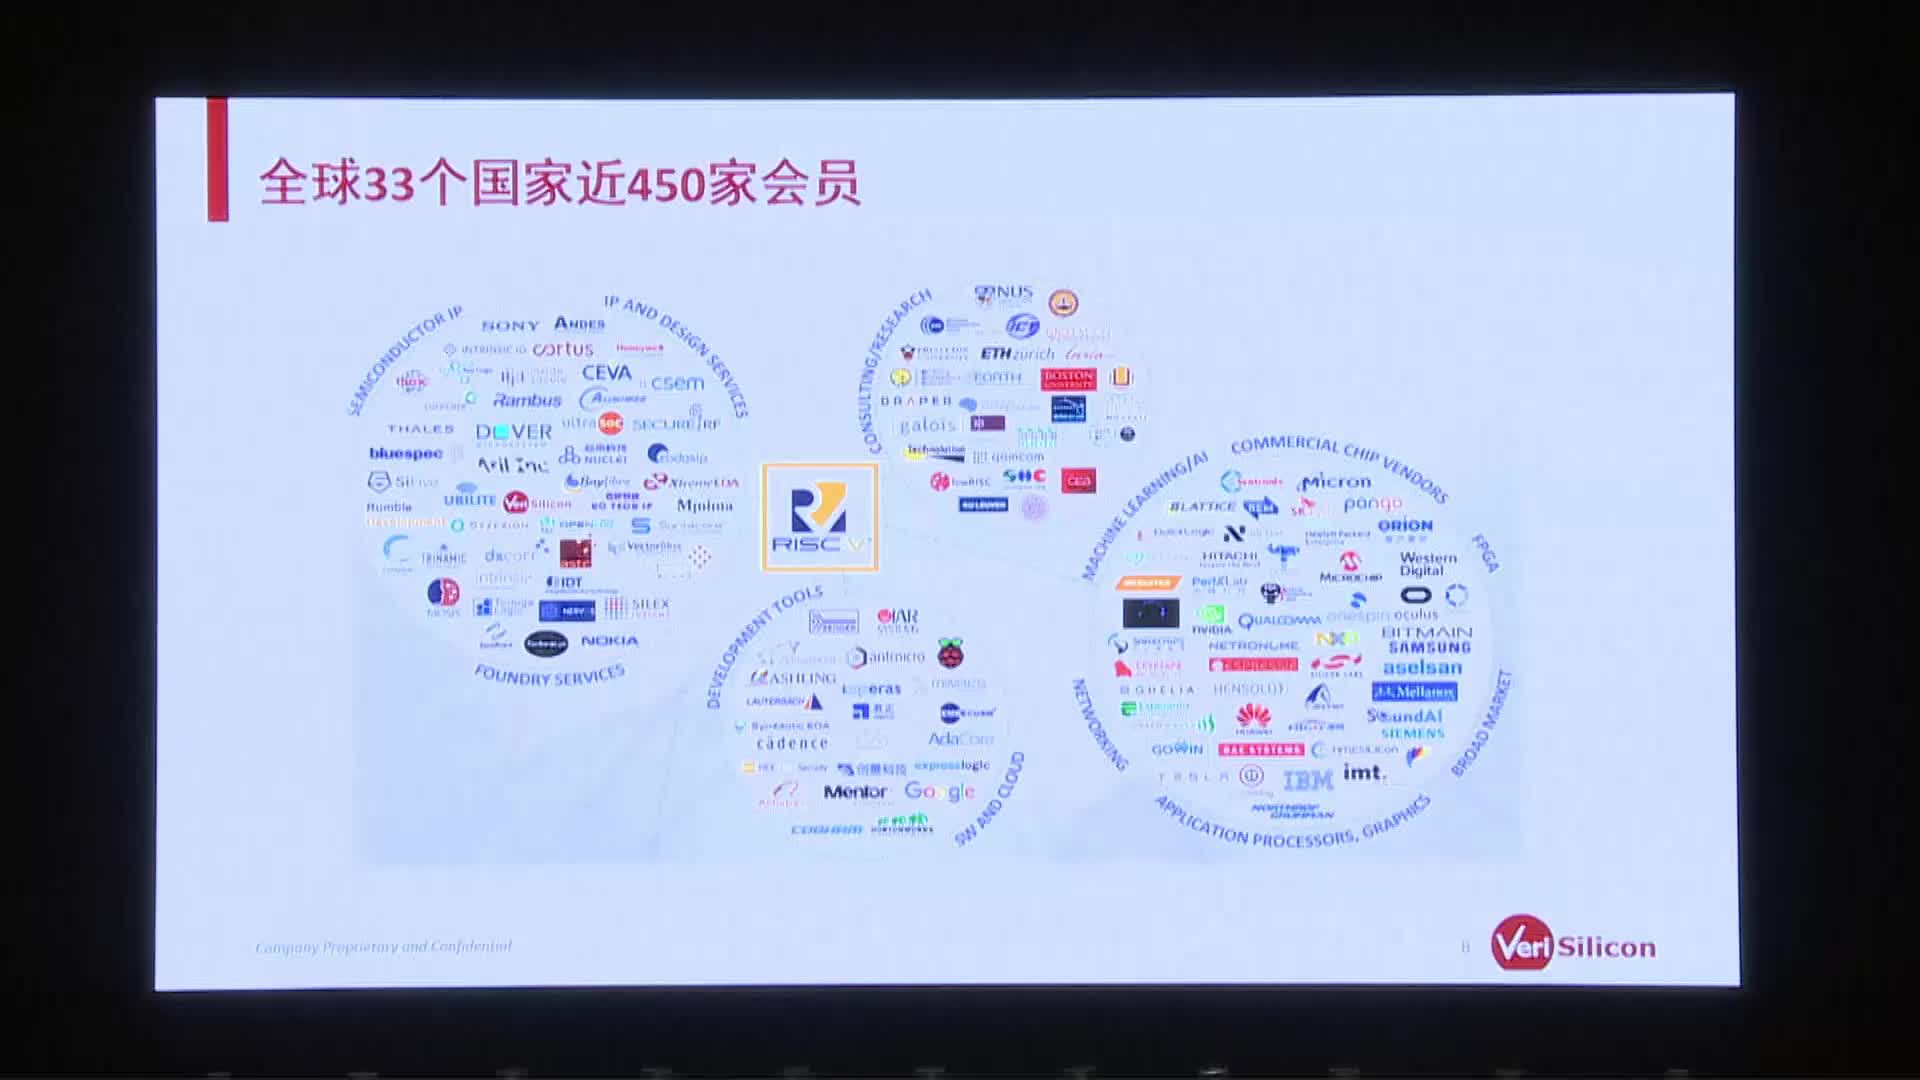 汪洋 - RISC-V，智慧物联网创新发展的新机遇 - 第一届 RISC-V 中国峰会 1